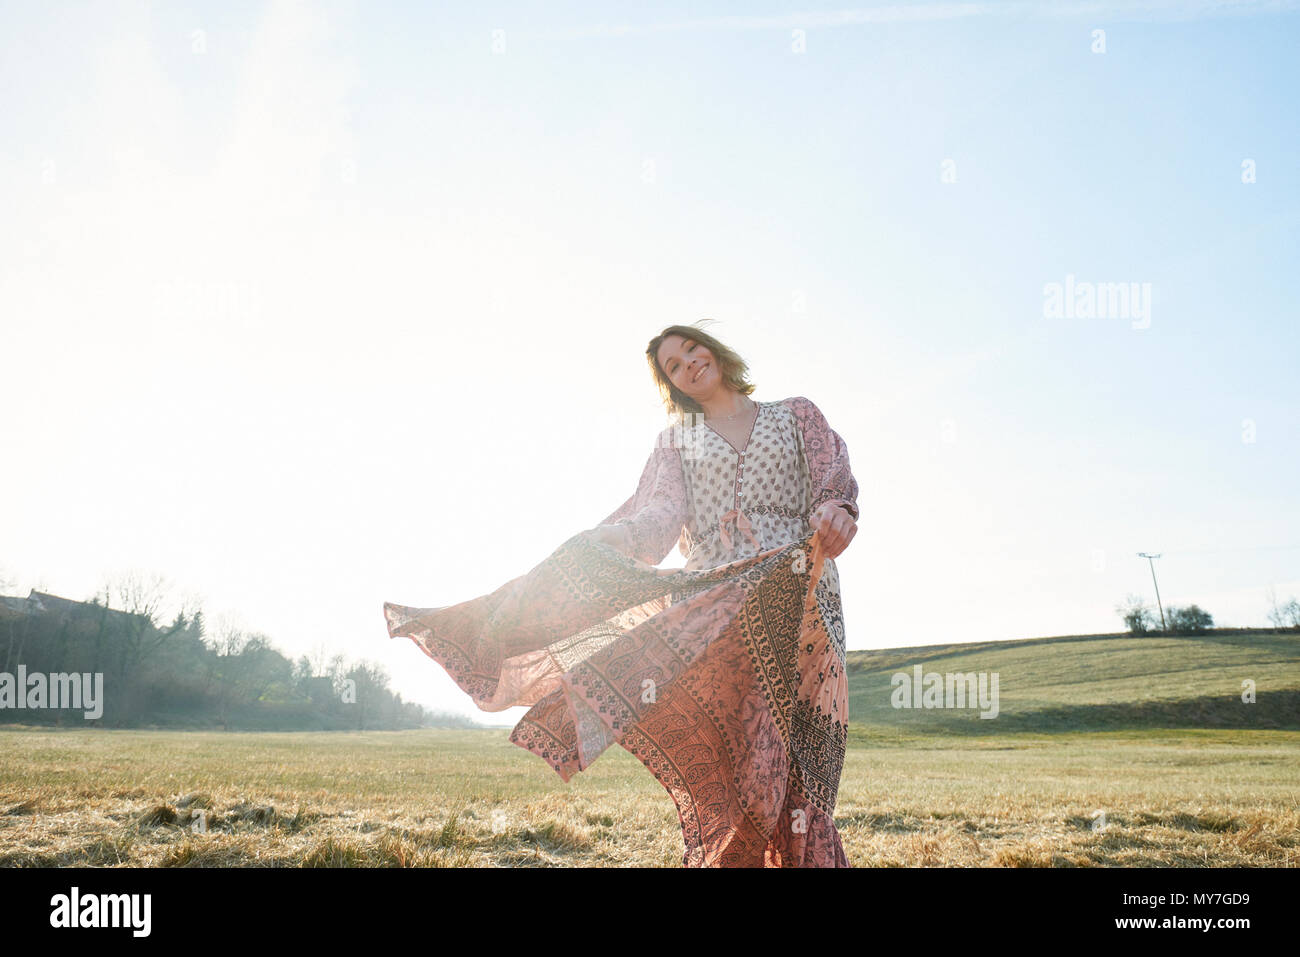 Hippy style woman dancing in sunlit in field, portrait Stock Photo